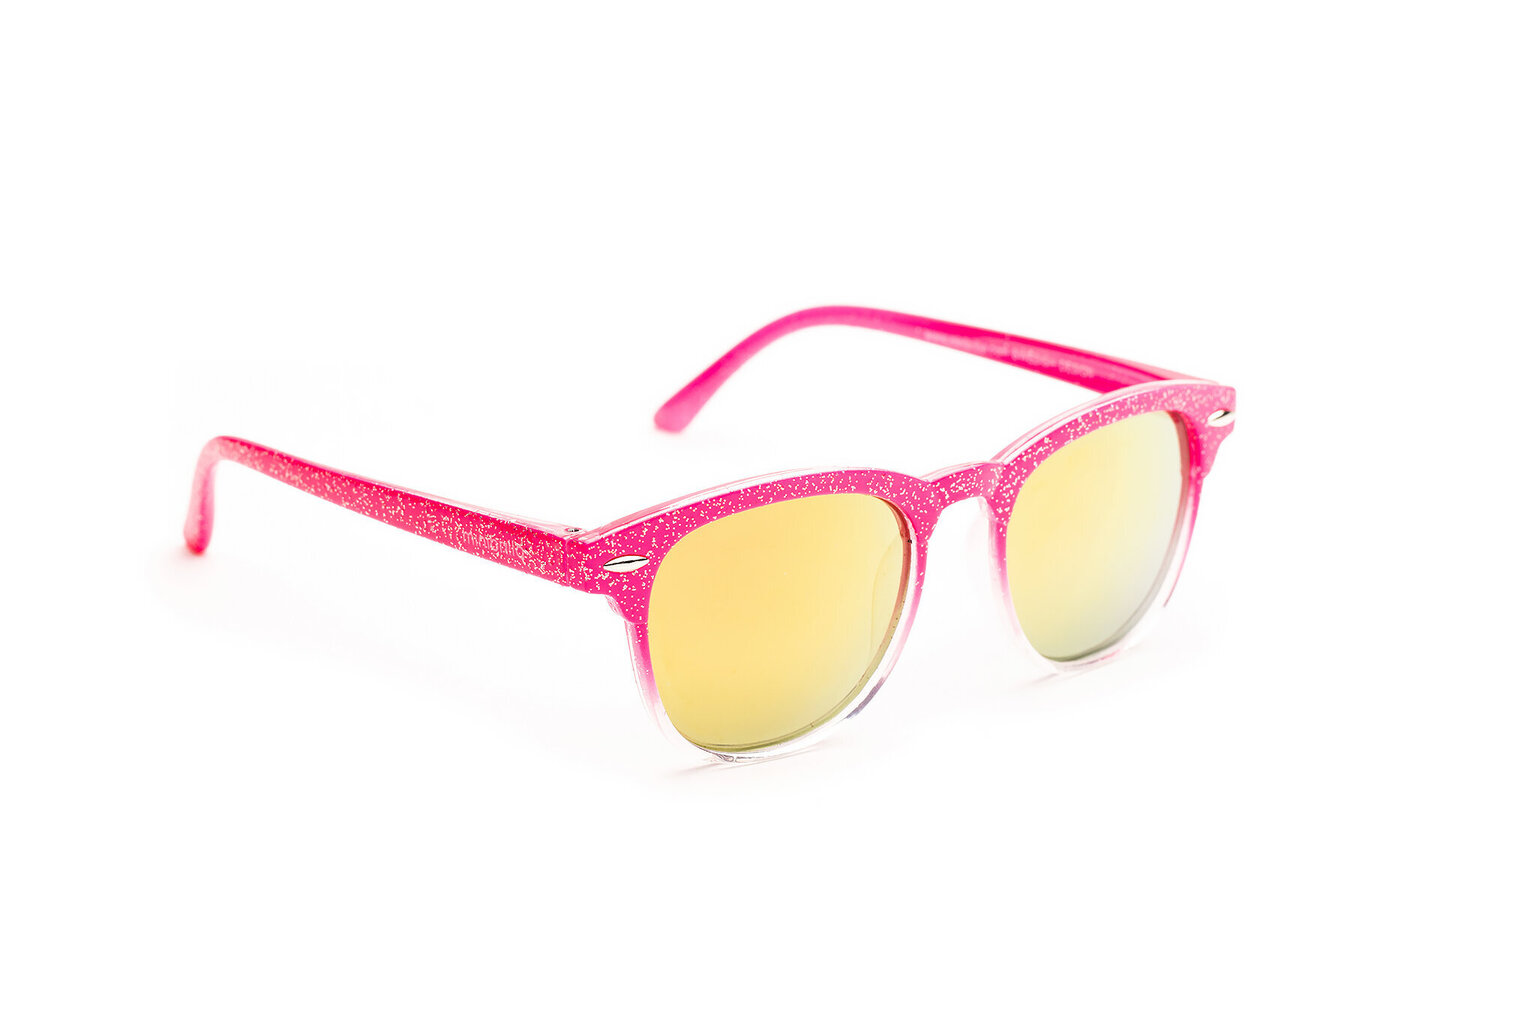 Saulės akiniai vaikams Minibrilla 41934-44 kaina | pigu.lt